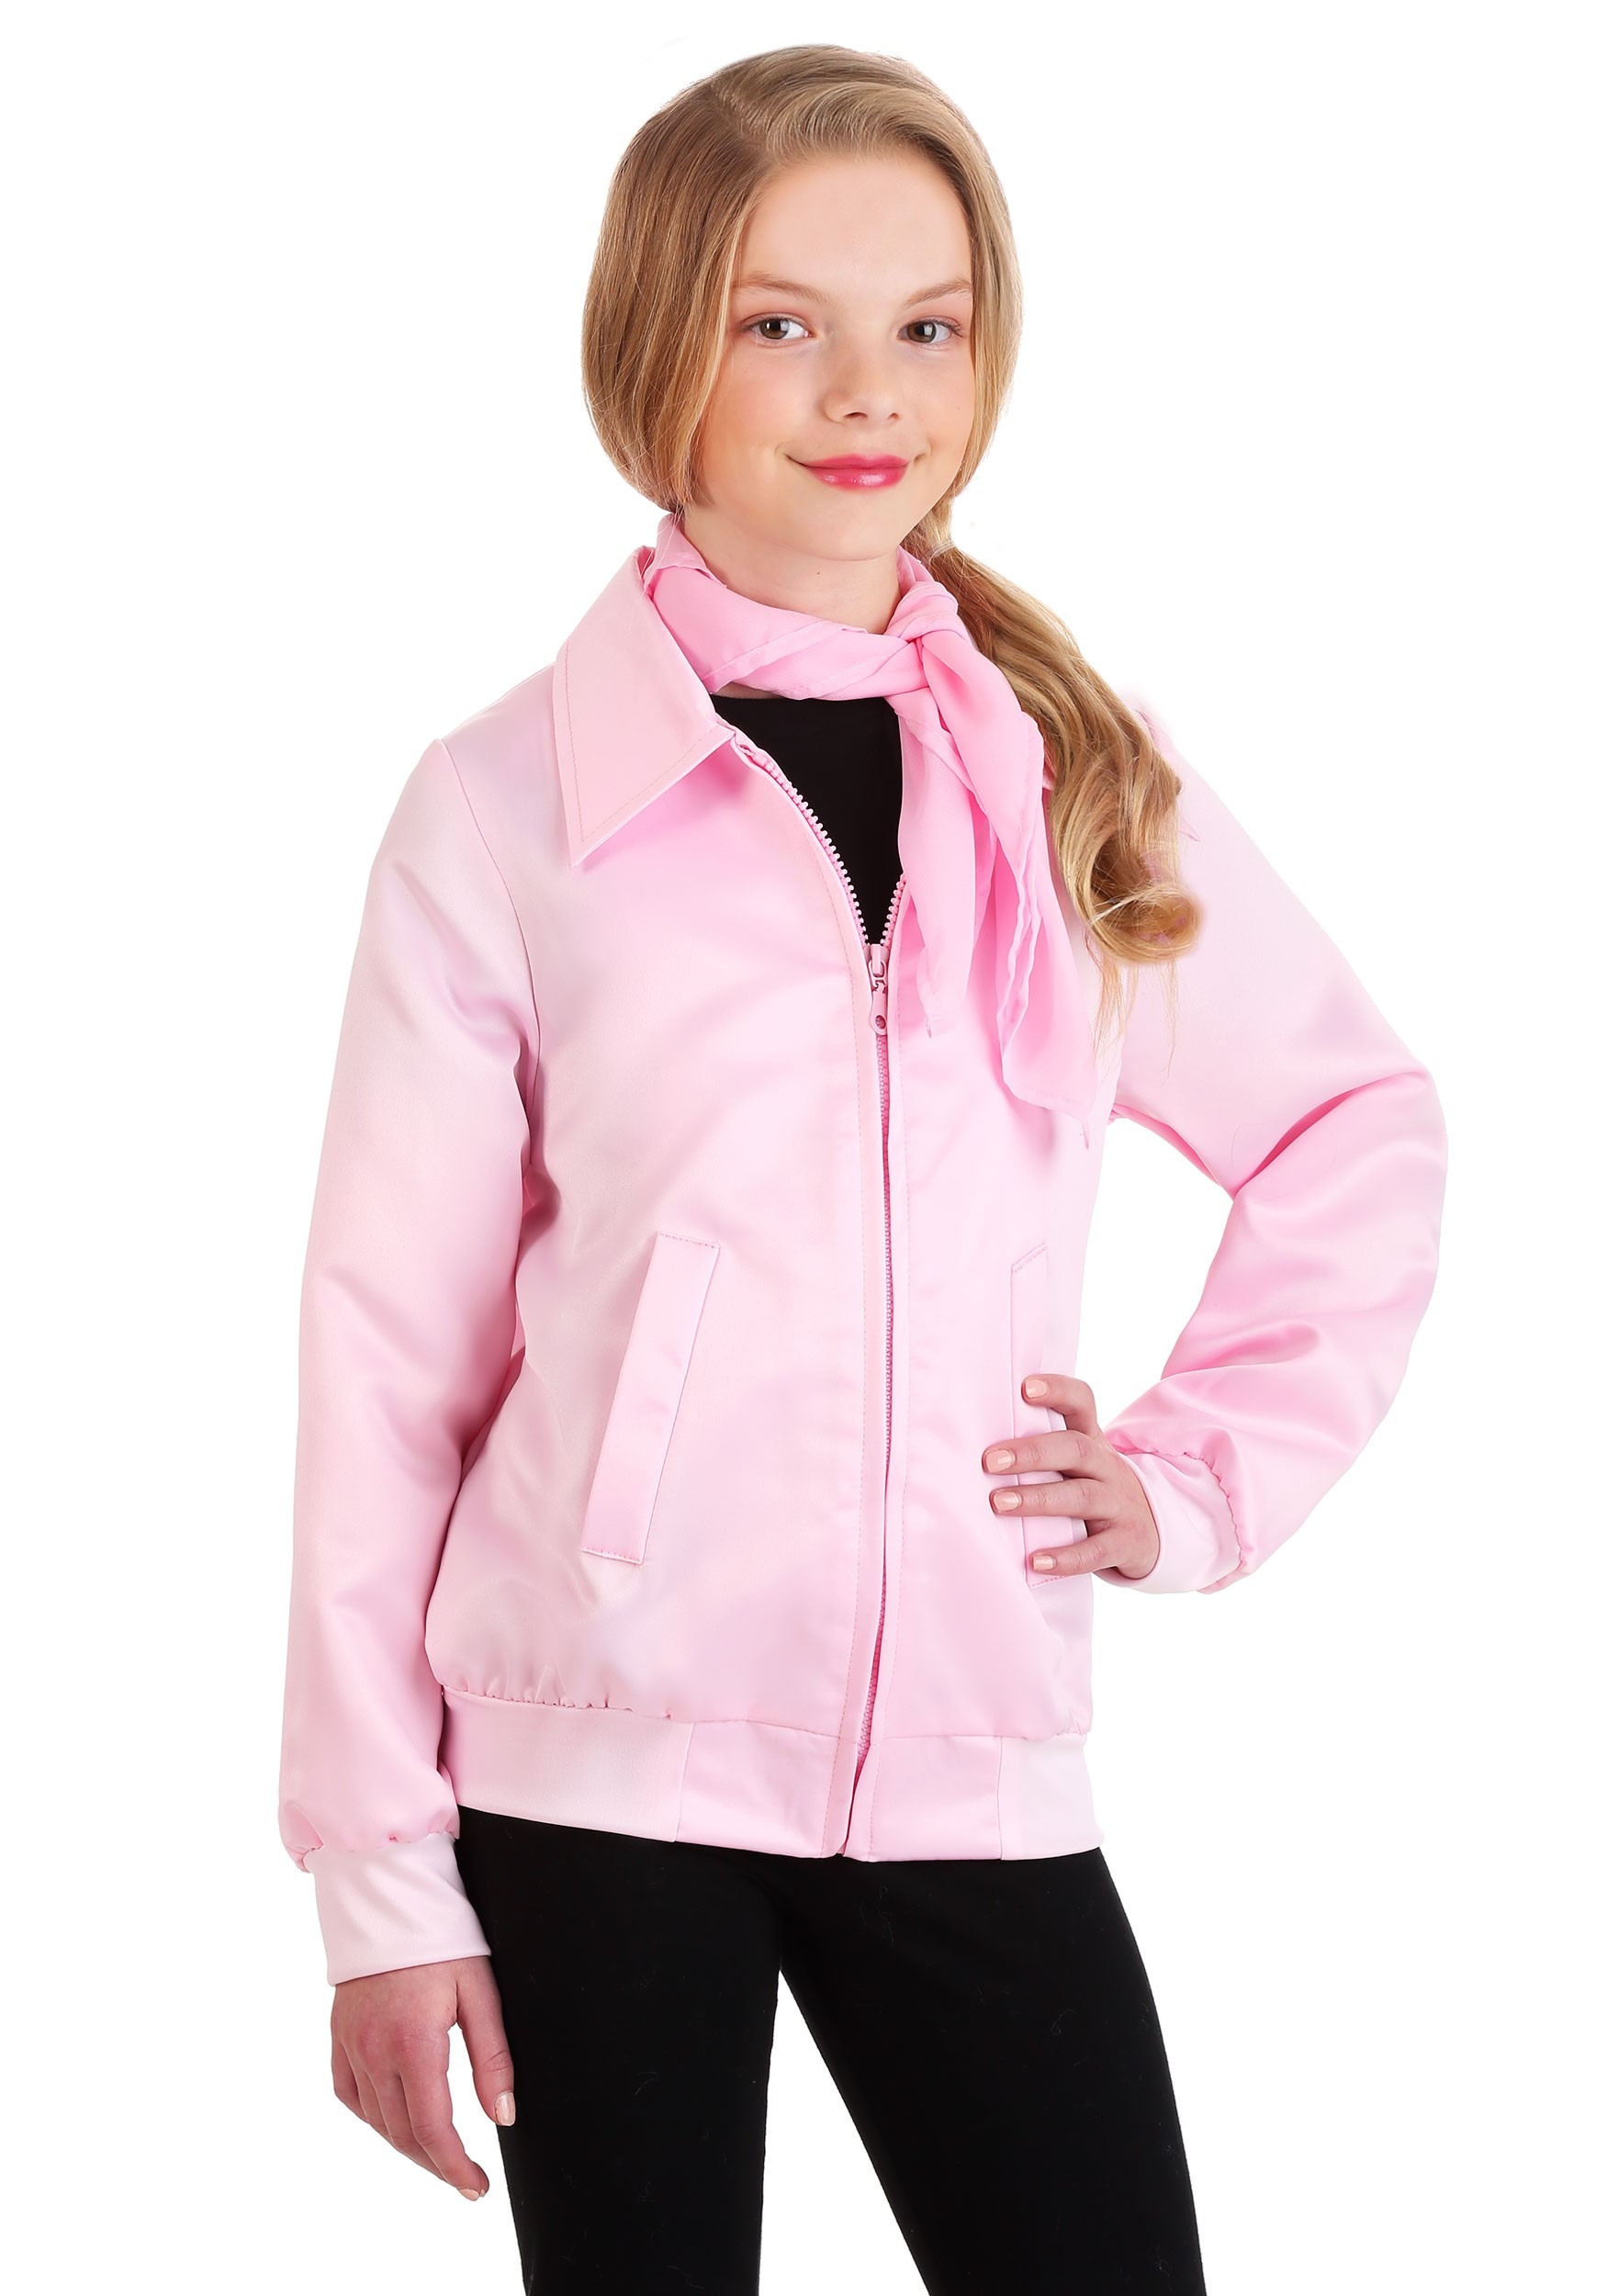 Photos - Fancy Dress FUN Costumes Girls Grease Pink Ladies Costume Jacket Black/Pink FUN011